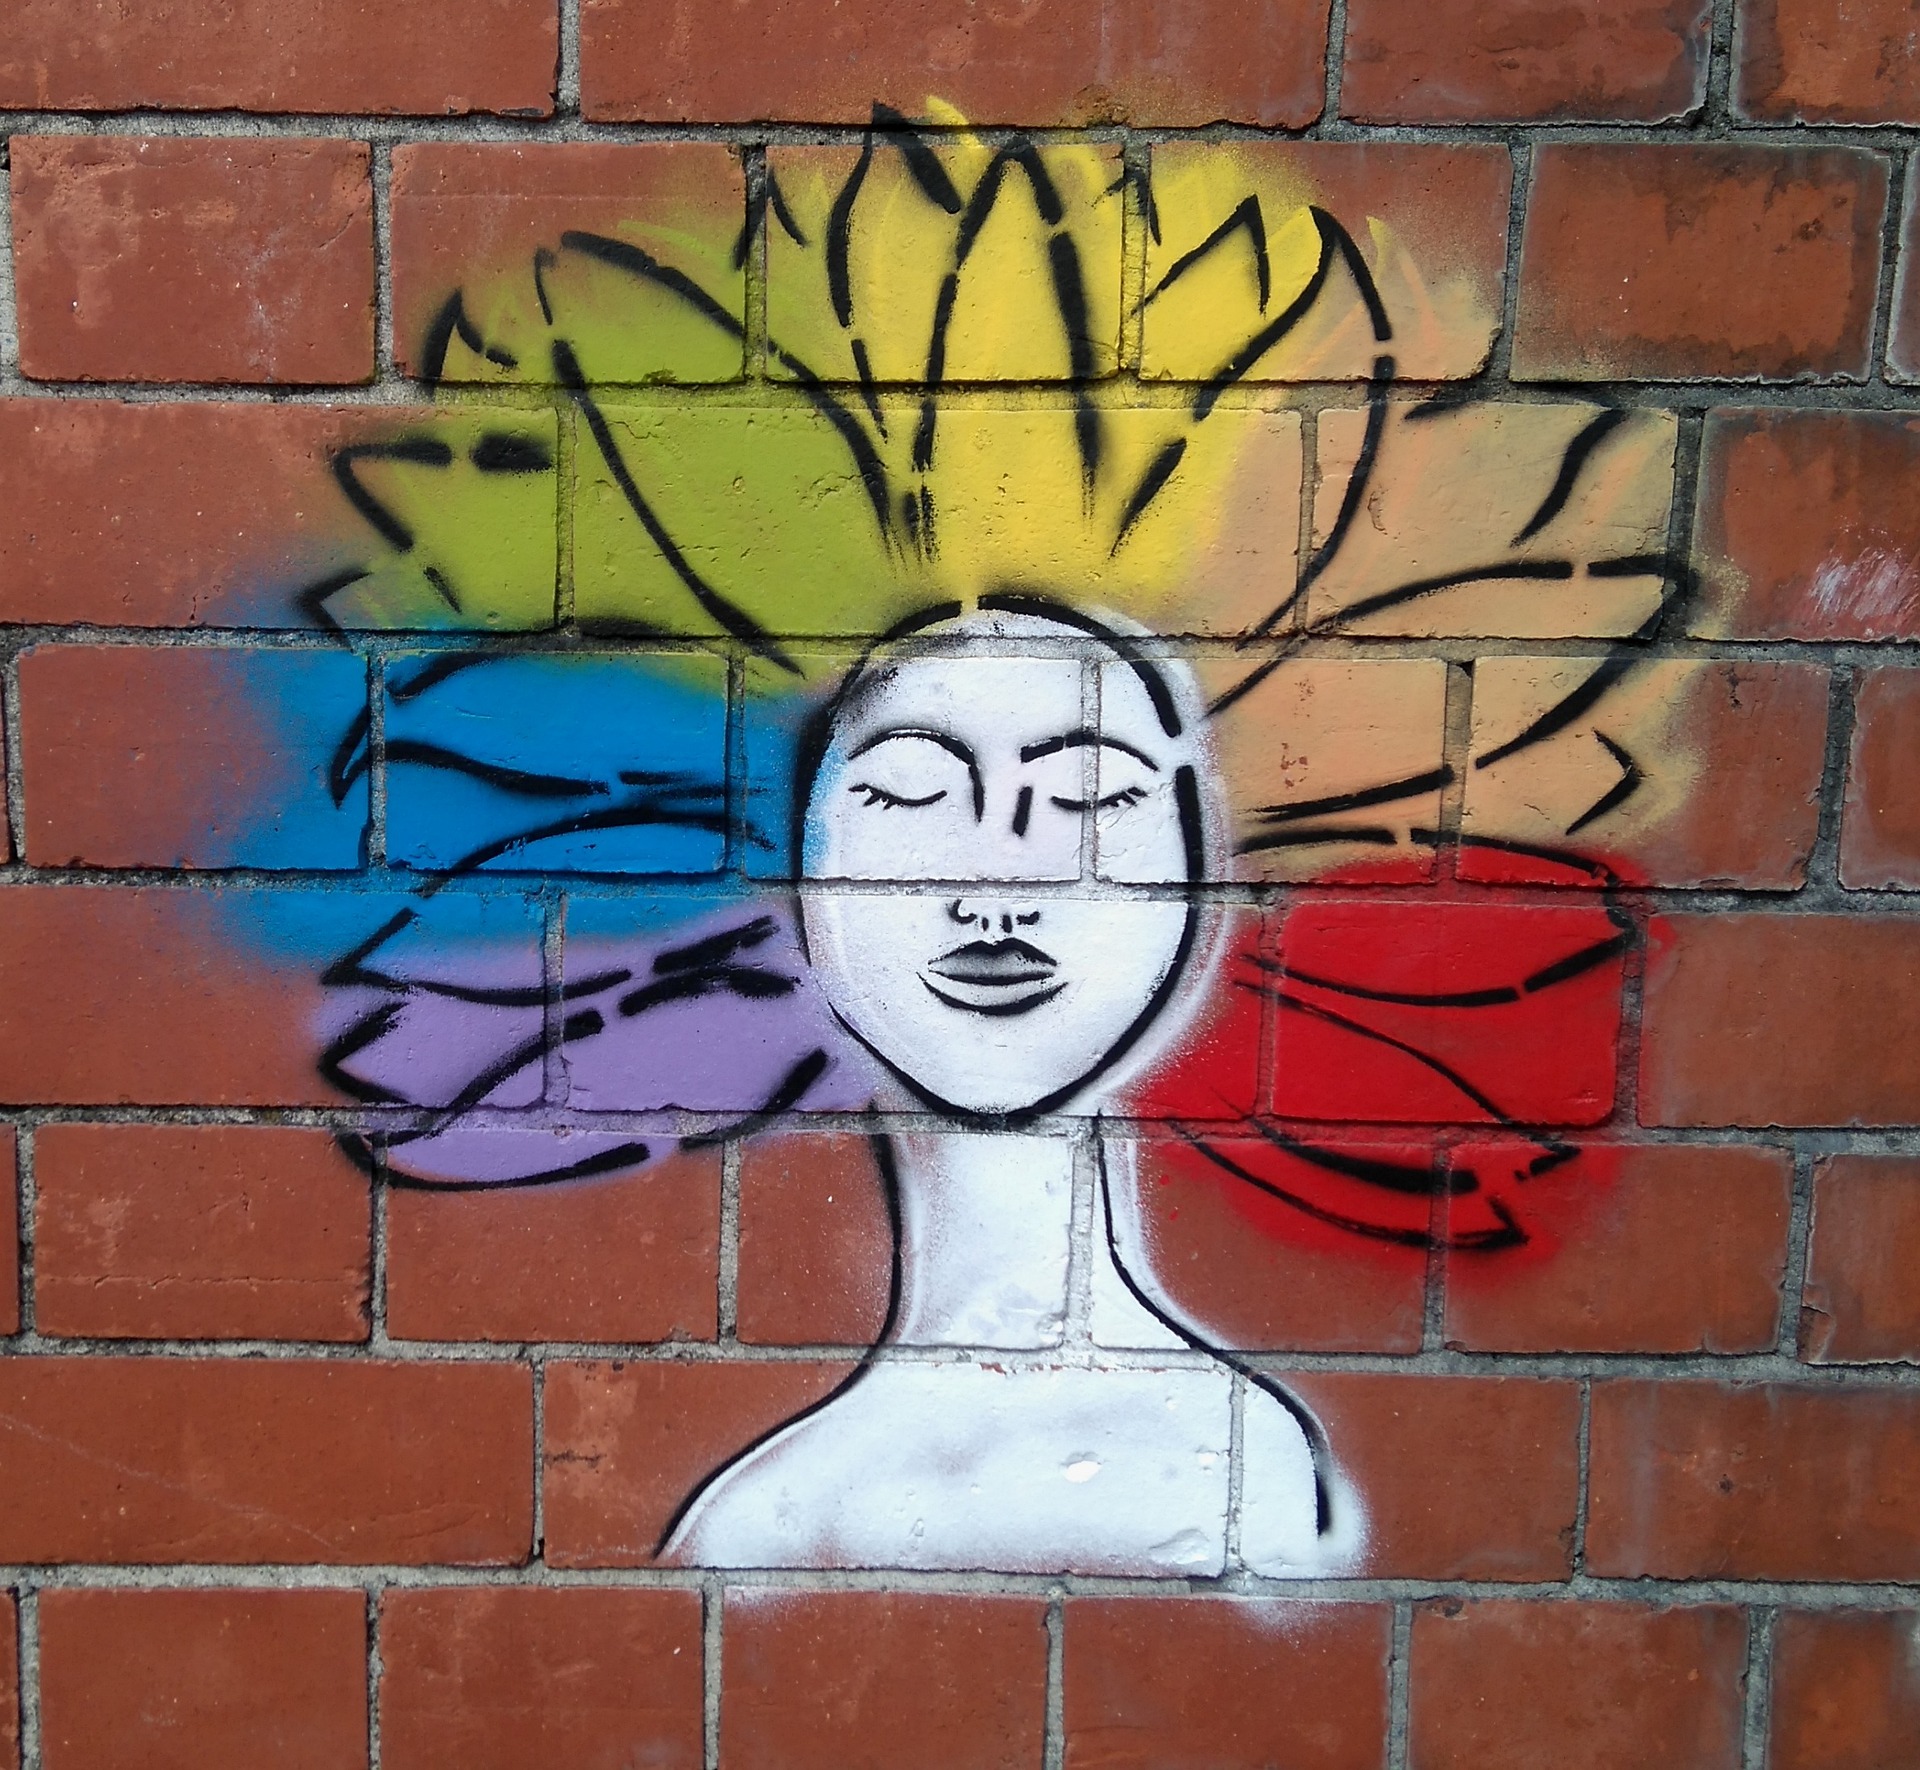 graffiti av en person med olika färger som skickas ut via håret